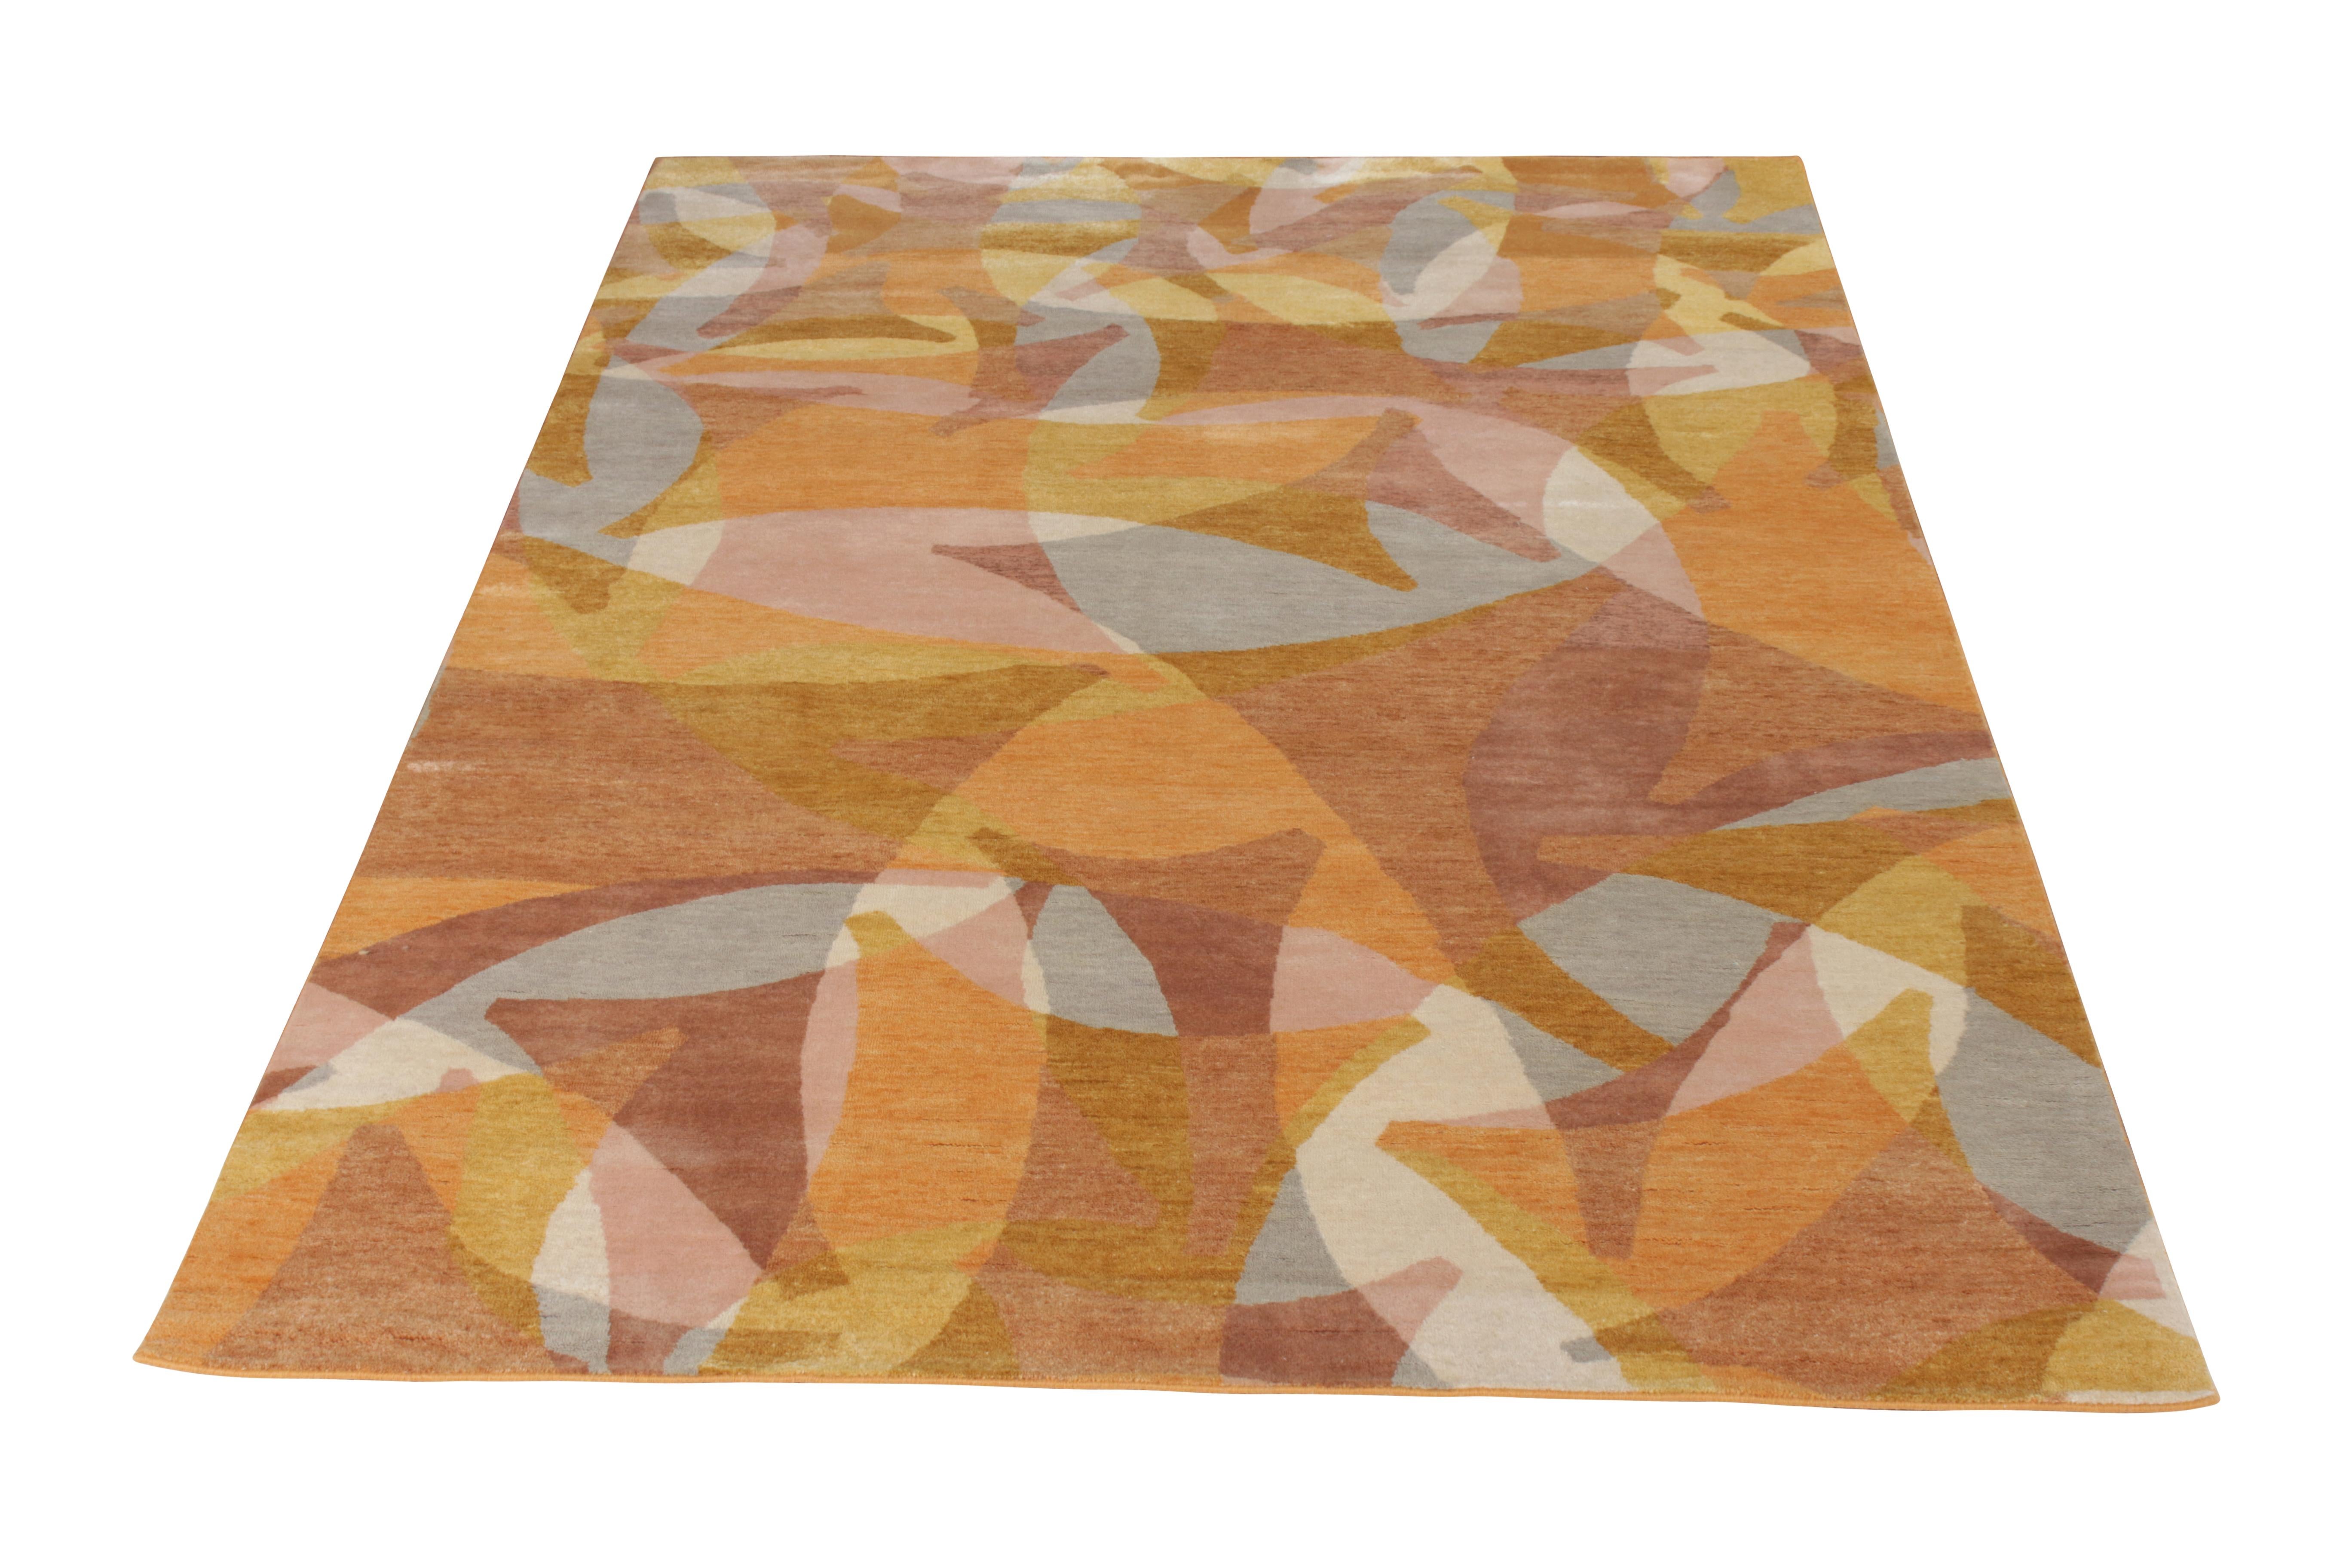 Ein 6 x 9 großer Teppich aus handgeknüpfter Wolle aus der kühnen Mid-Century Modern Kollektion von Rug & Kilim. Eine fabelhafte Kombination aus einzigartigen Farben in Gold, Beige-Braun, Rosa und verschiedenen Akzenten in faszinierenden